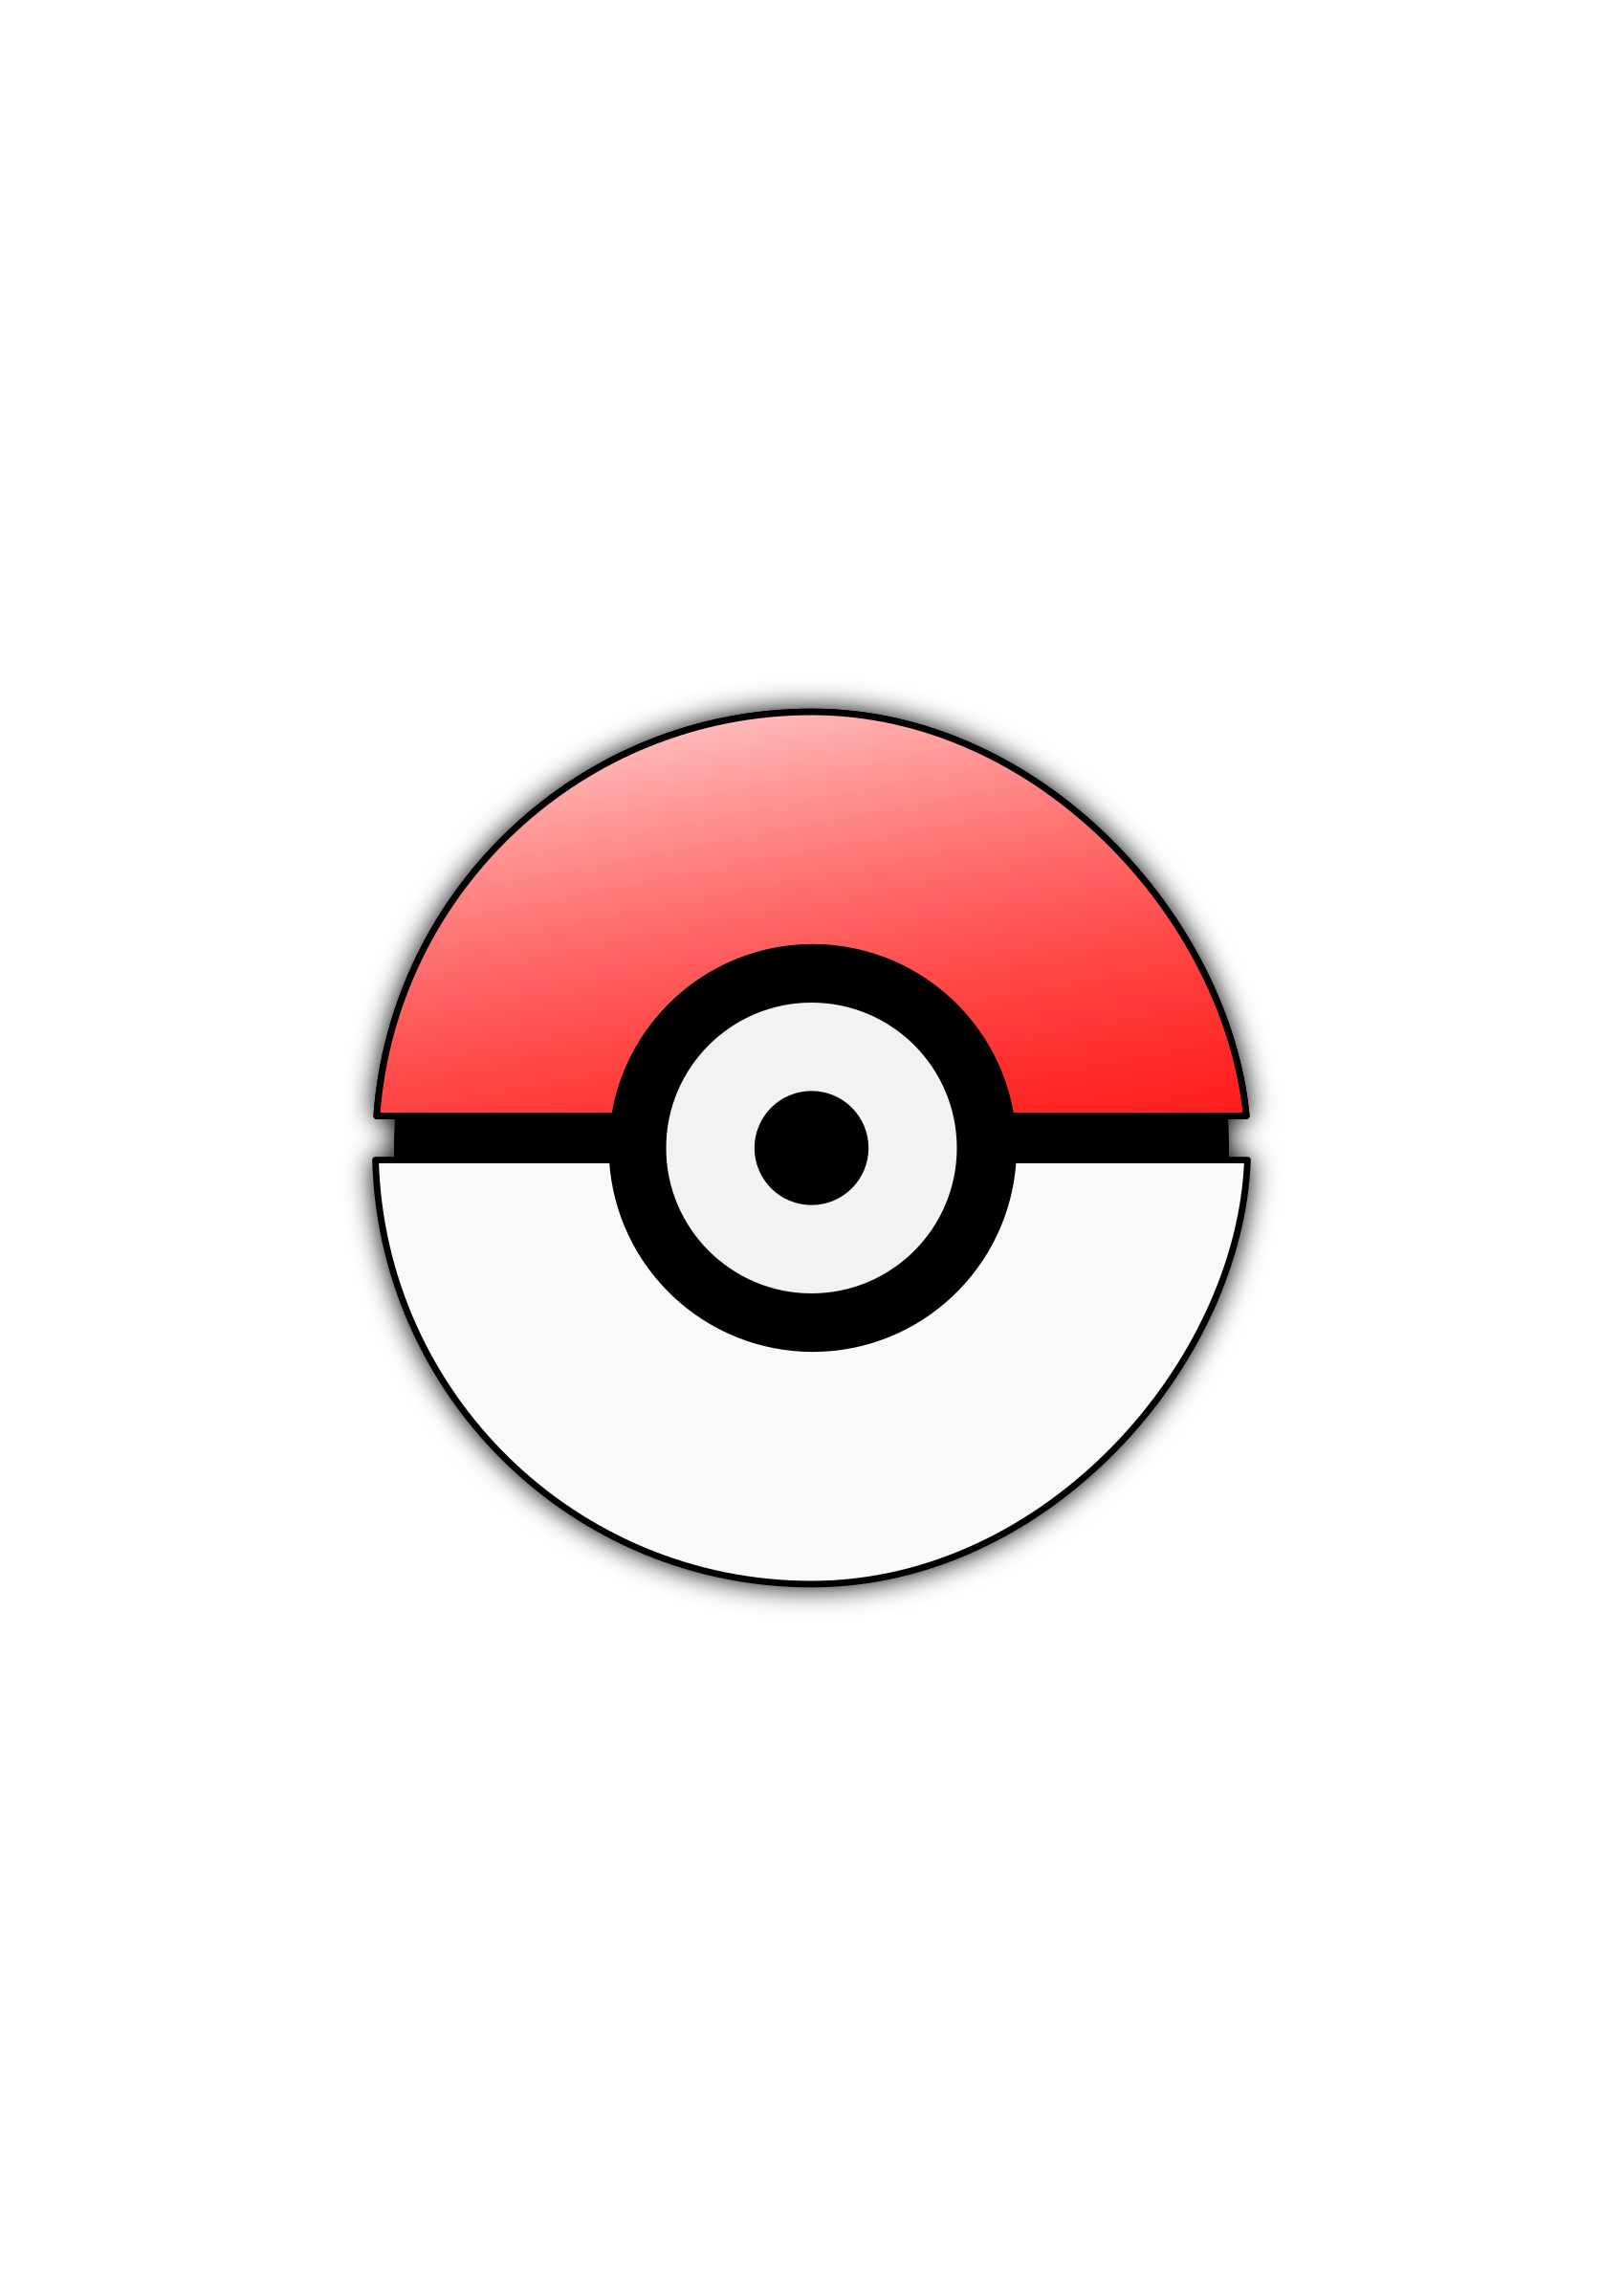 Open, pokeball, pokemon go, game Icon Free of Pokmon Go icons